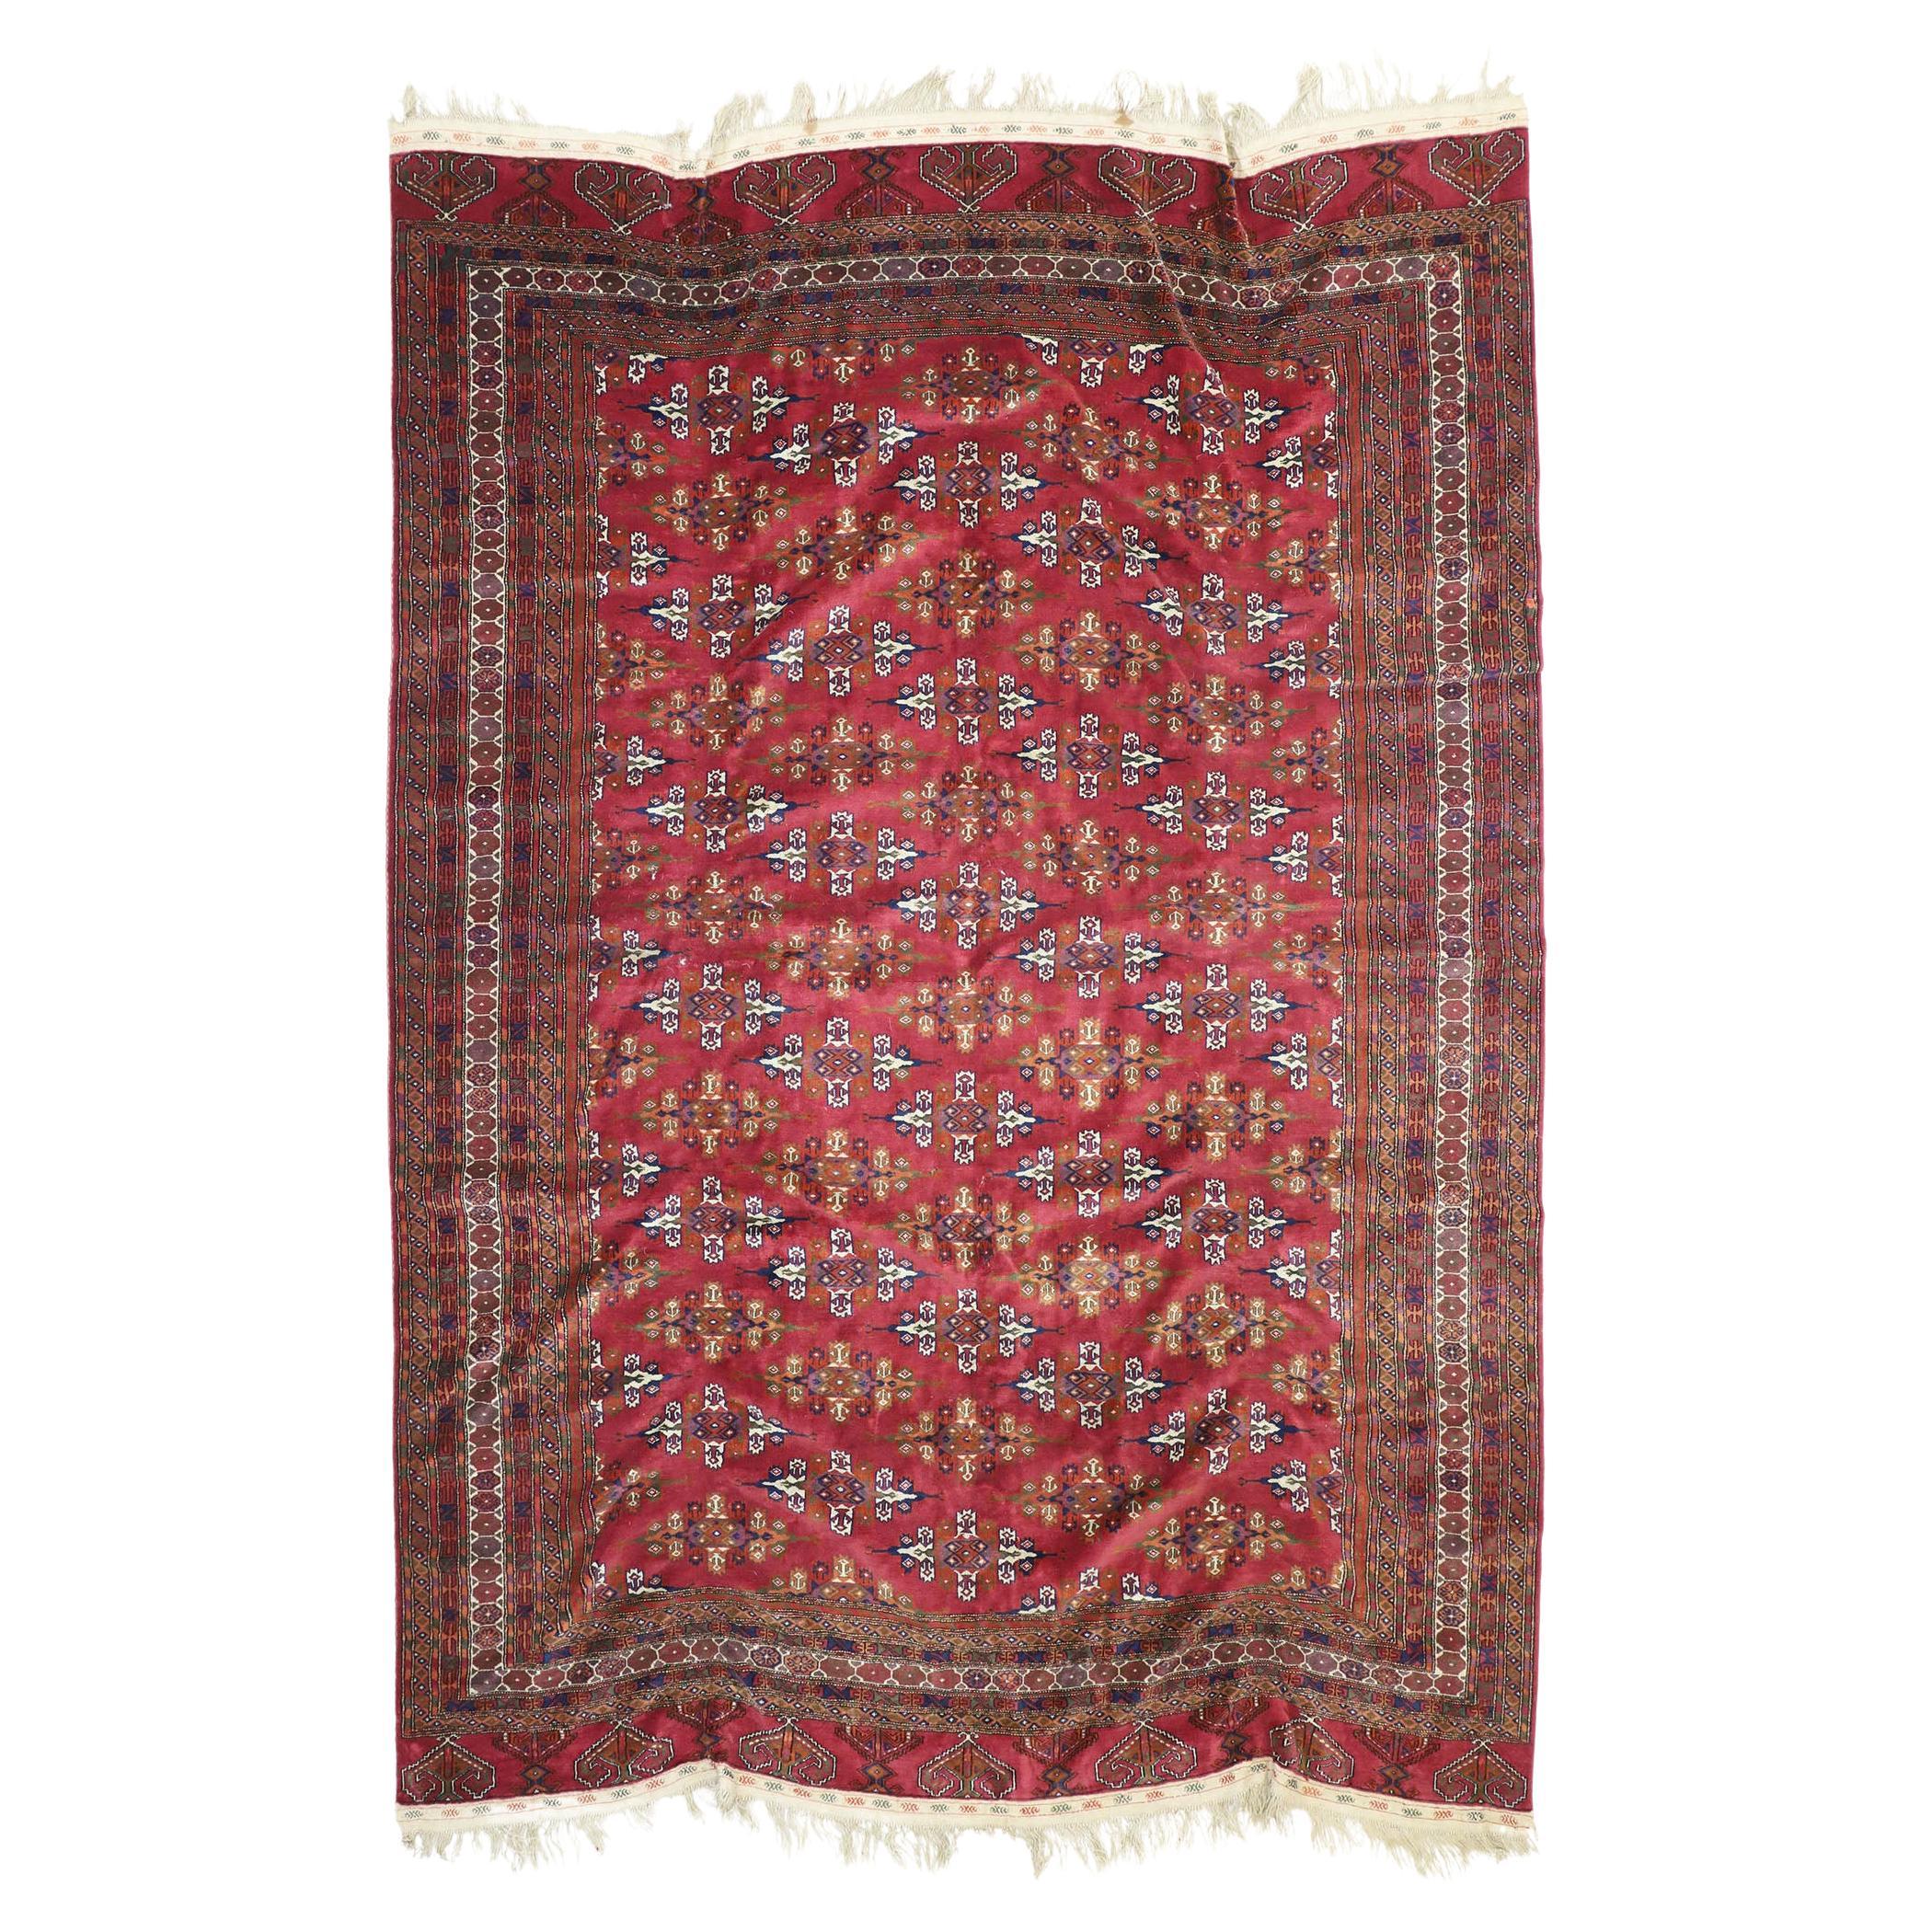 Persischer Vintage-Baluch-Teppich